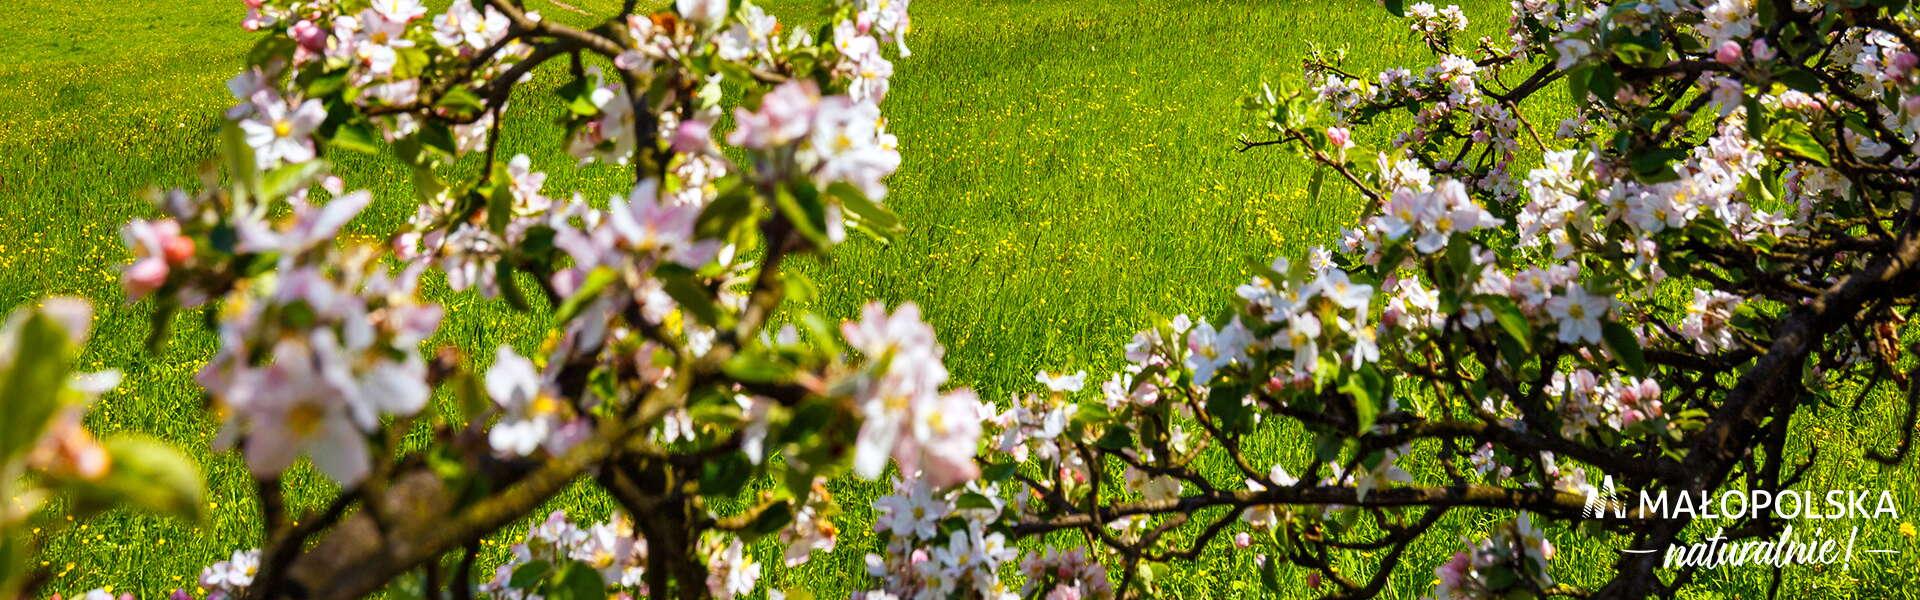 Kwitnące jabłonie na tle łąki. W prawym dolnym rogu logo - napis Małopolska naturalnie